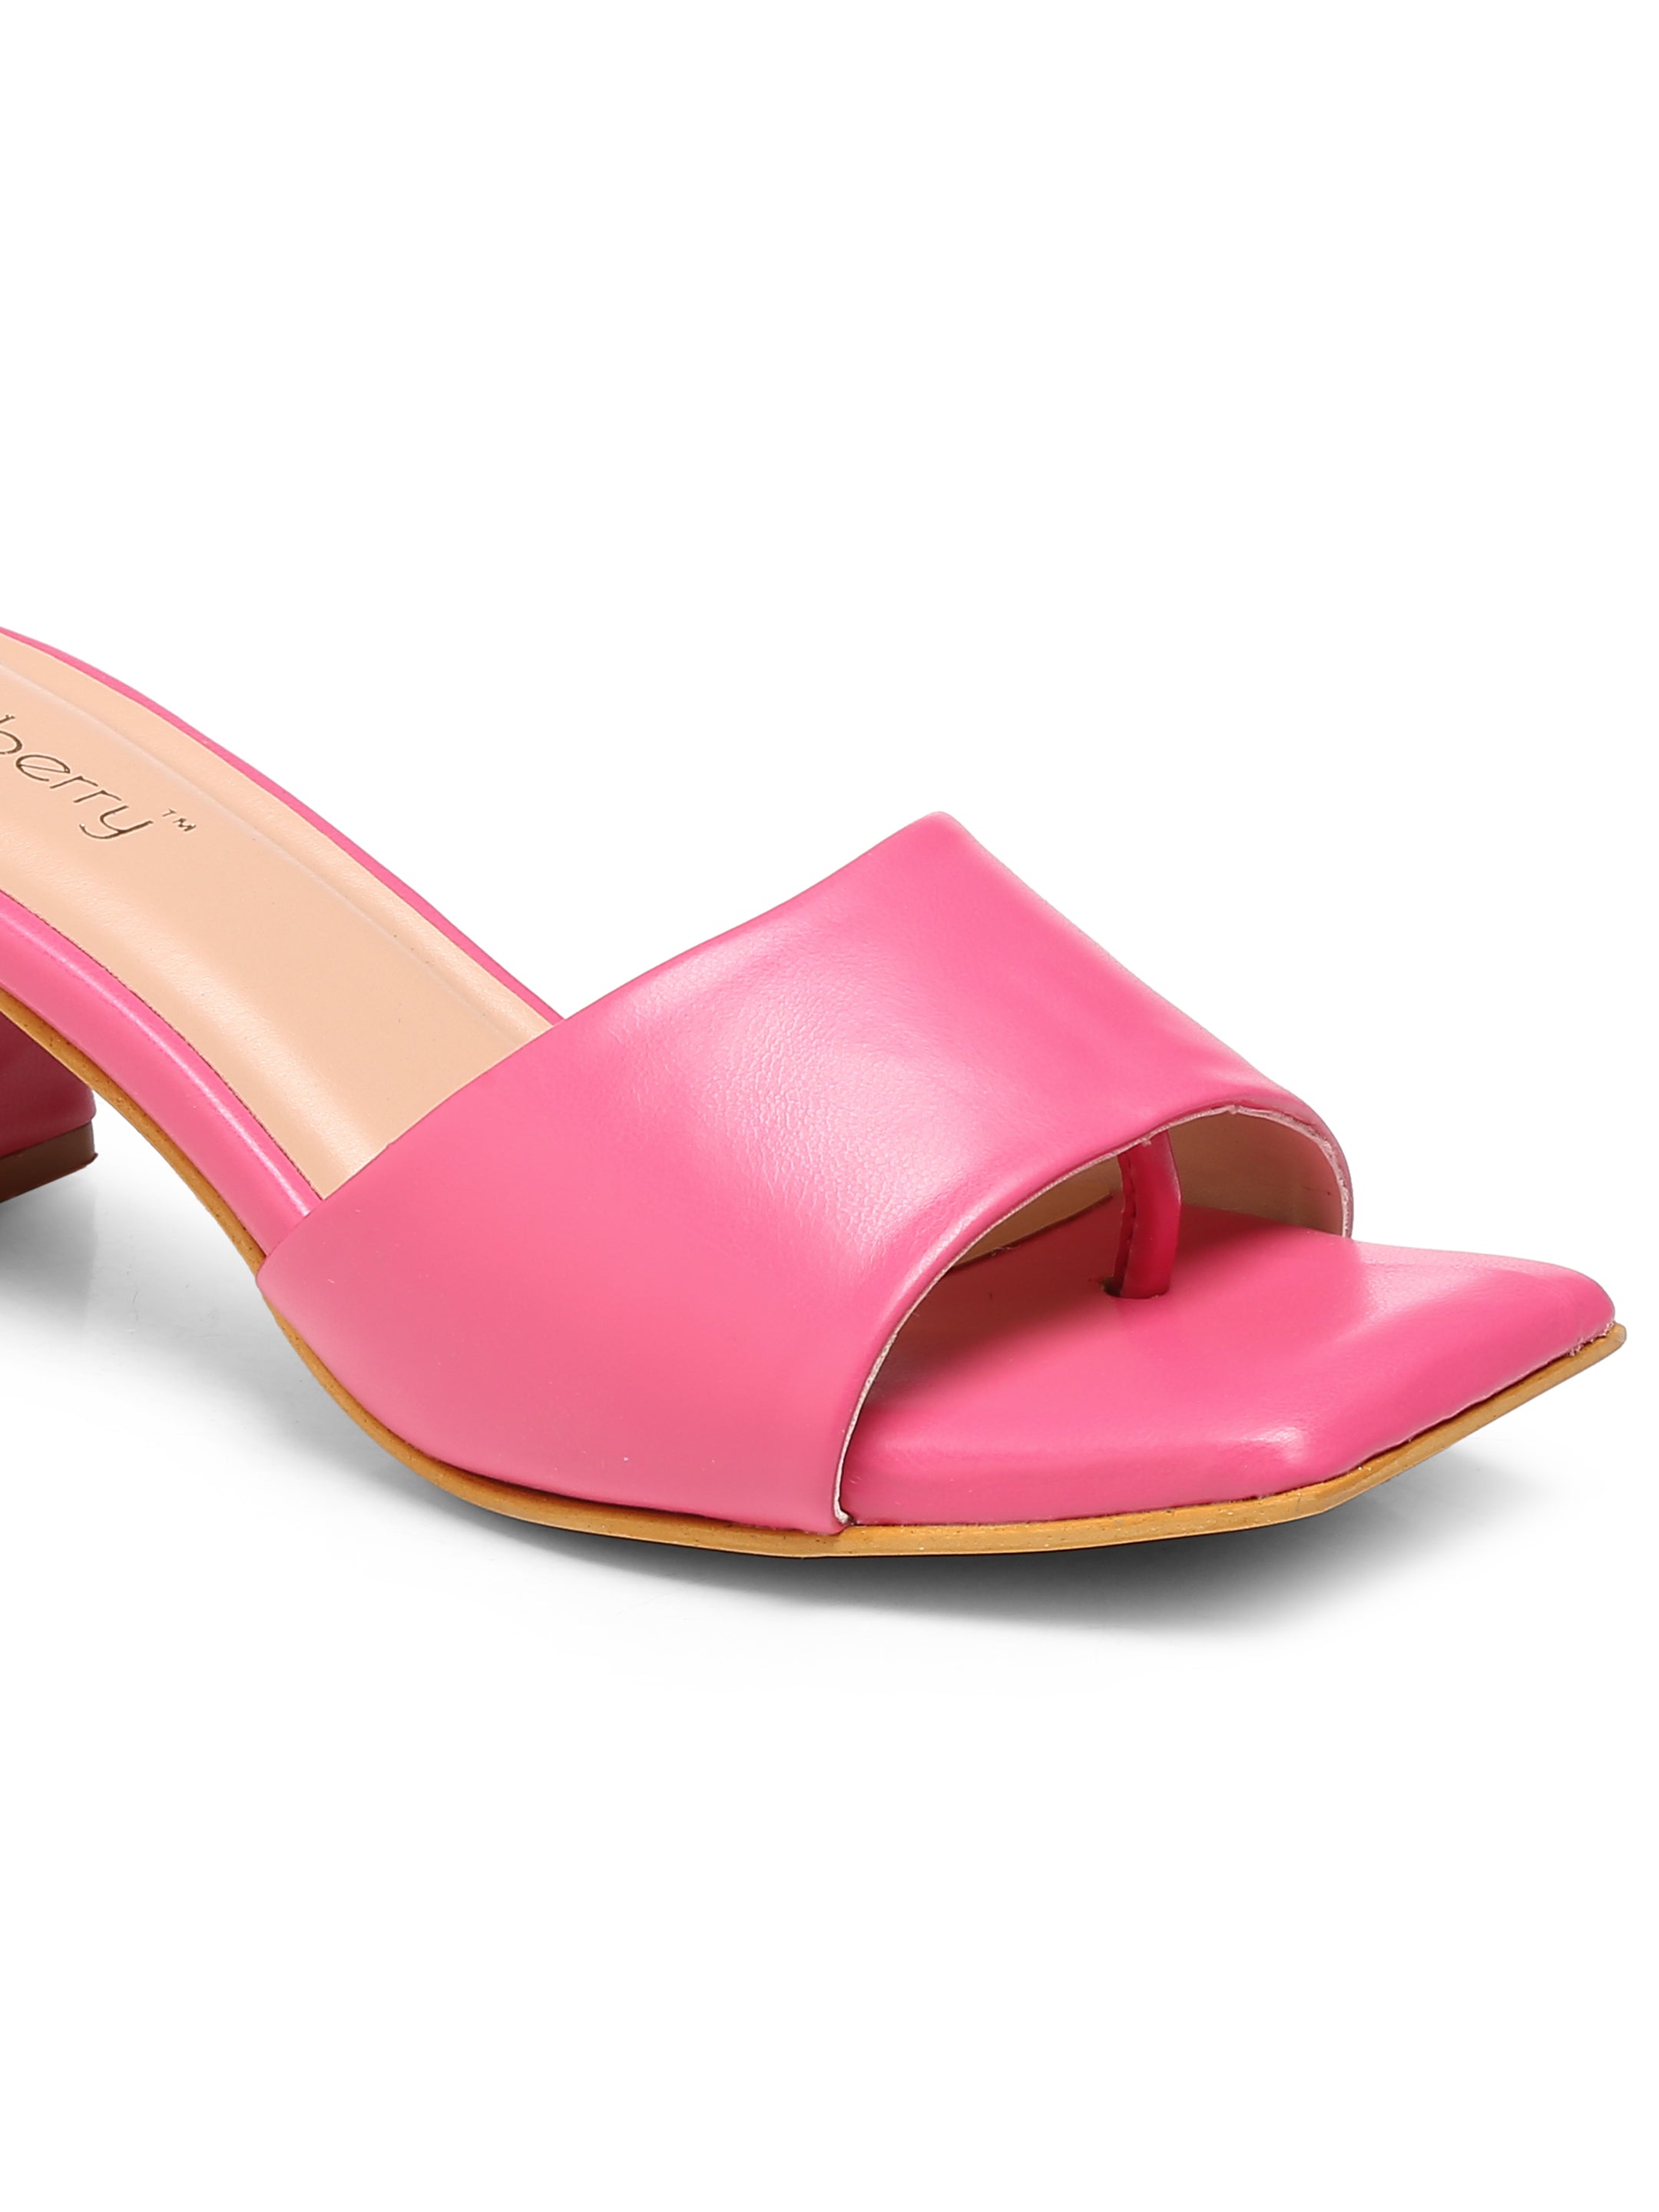 GNIST Pink Classy Block Heel